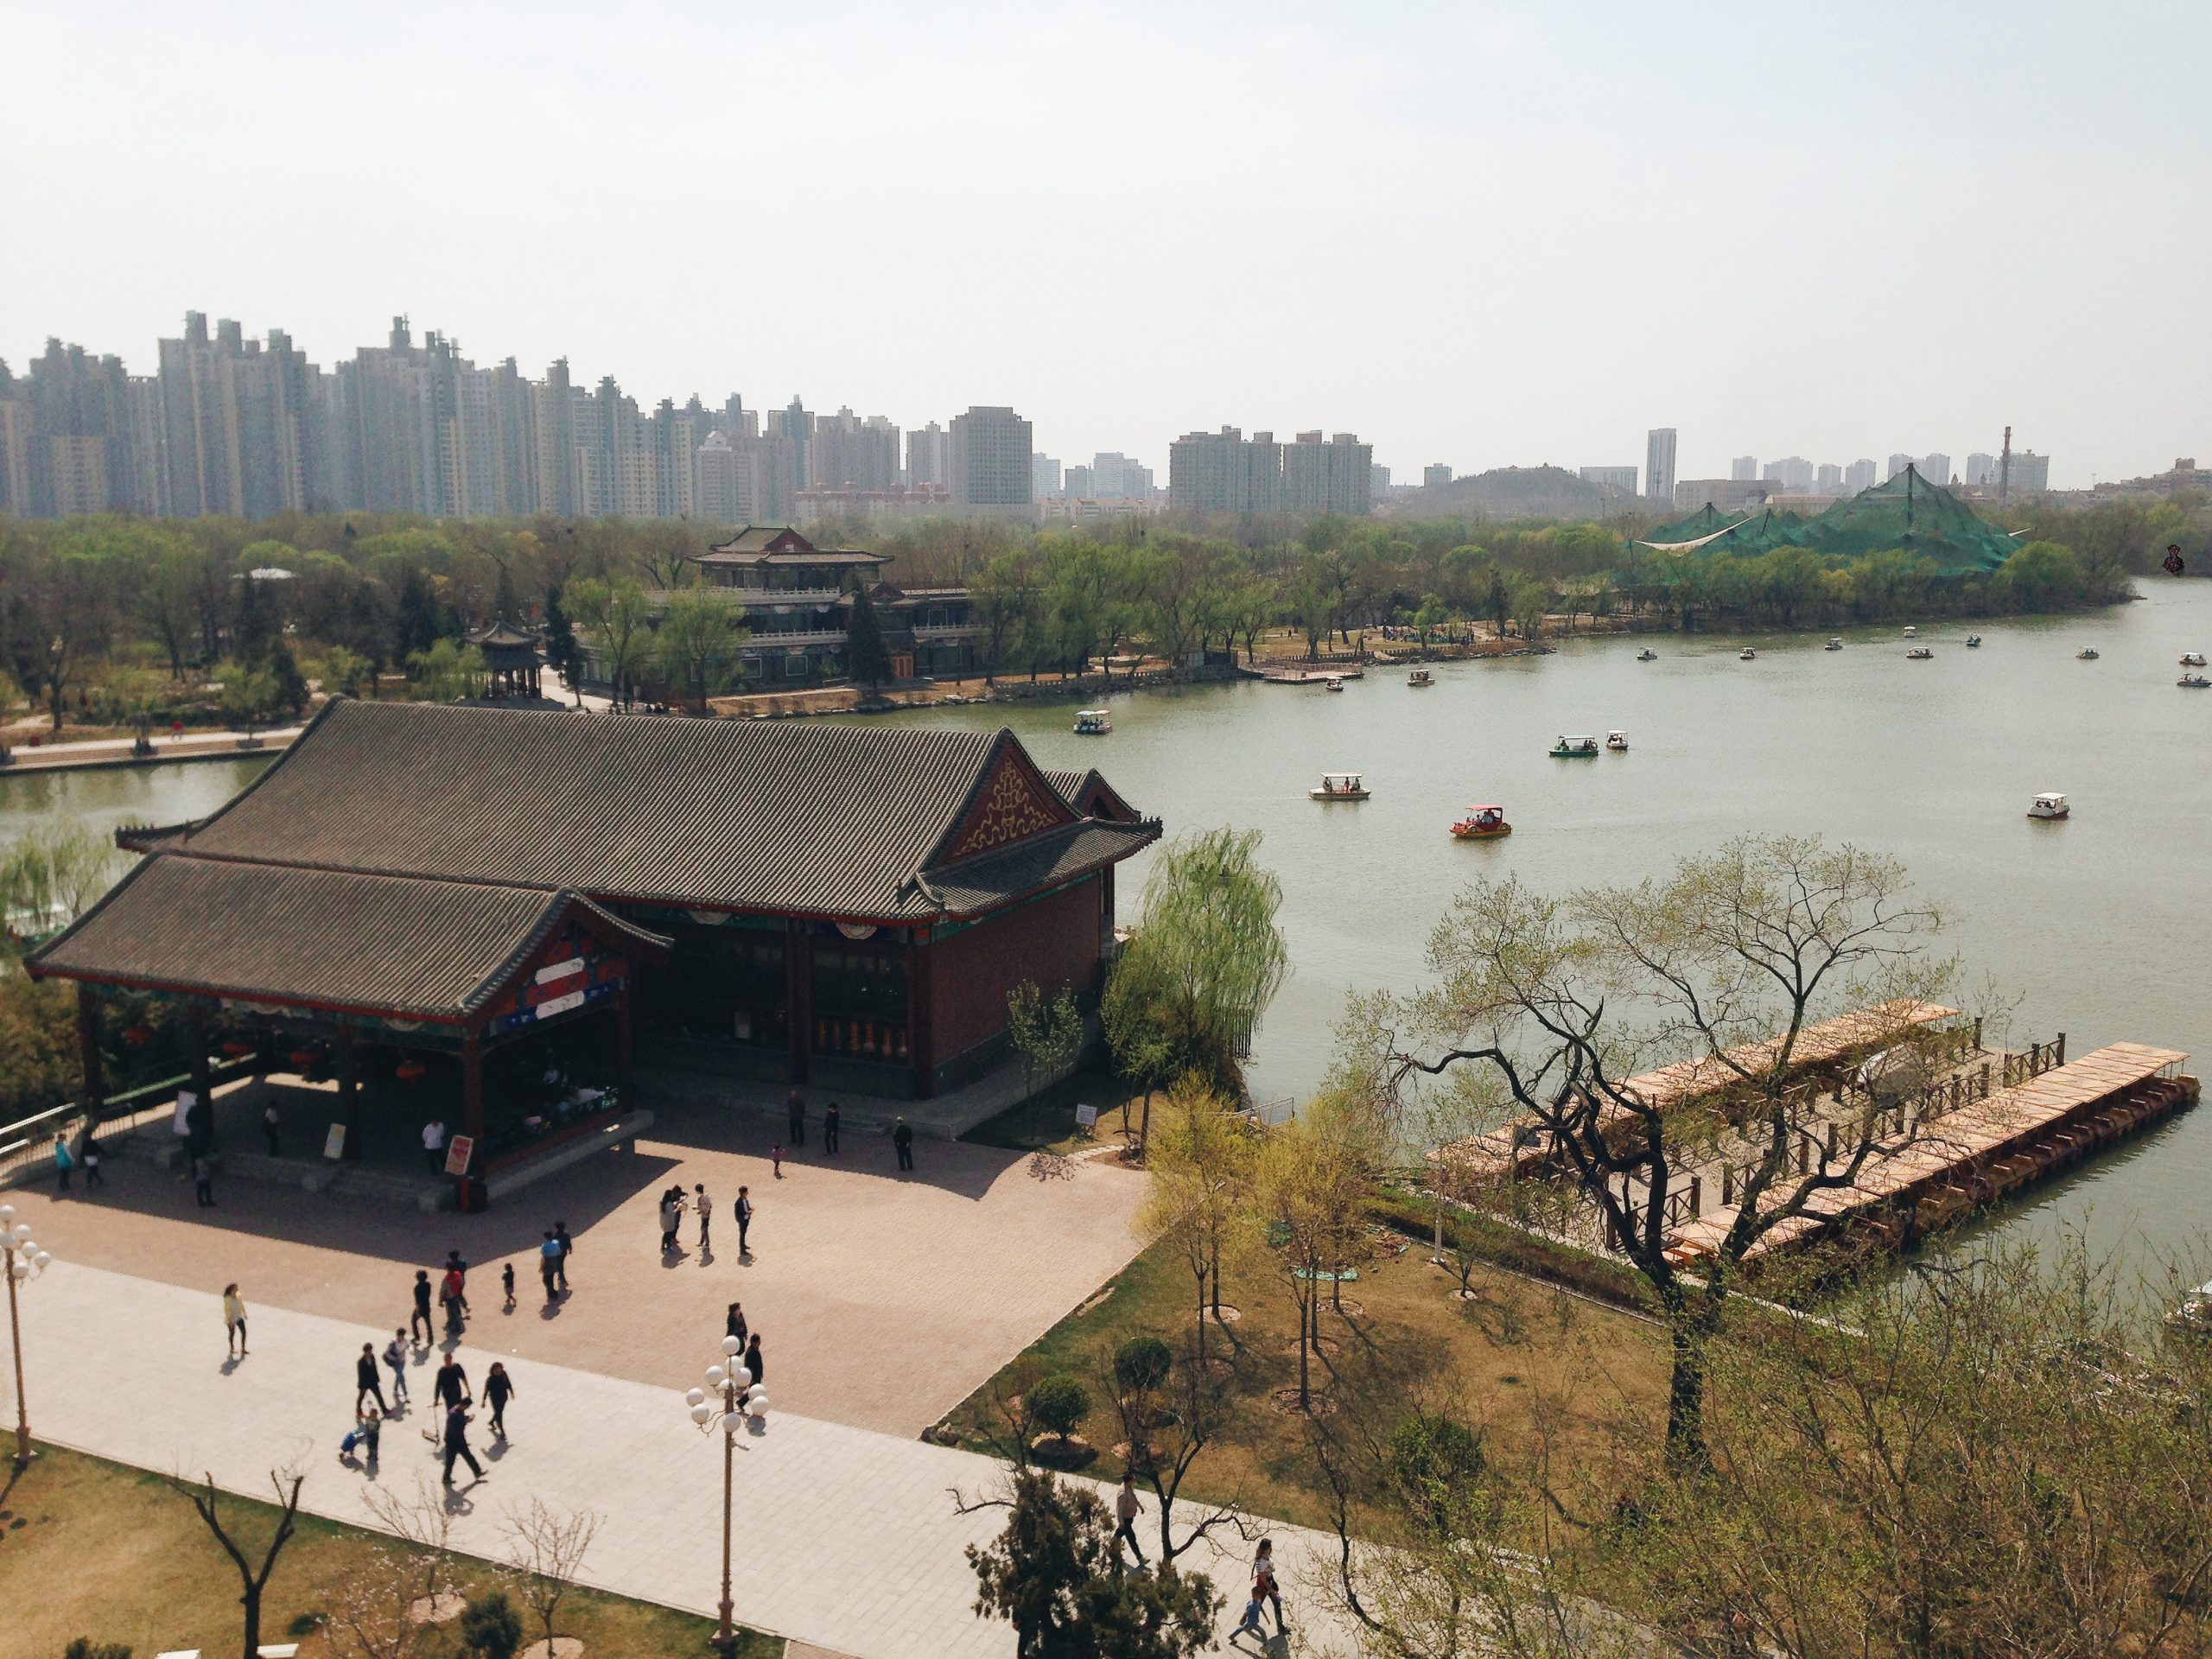 View of Shui Shang Park in Tianjin